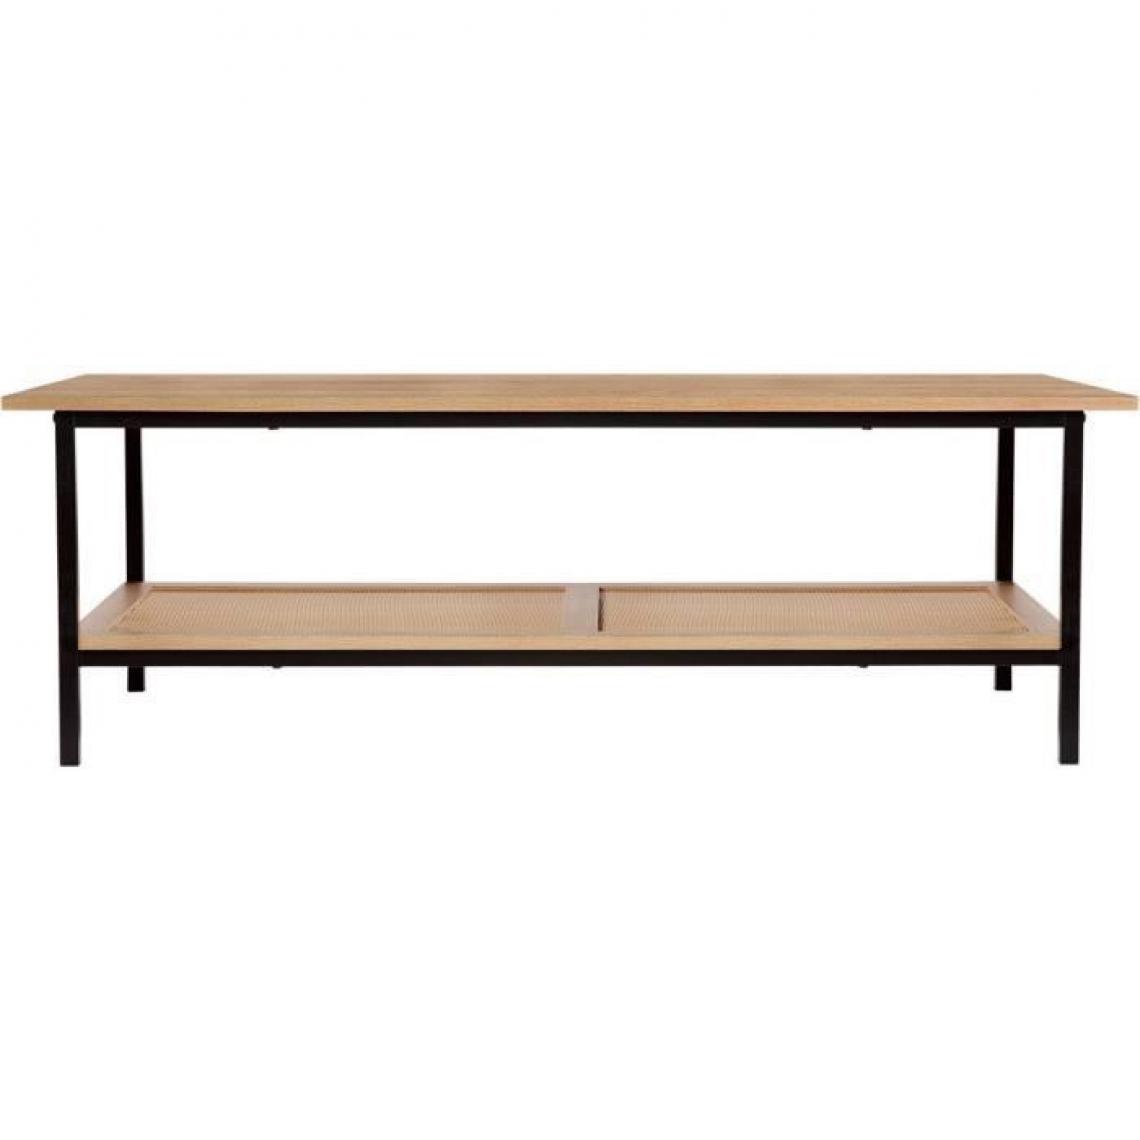 Cstore - Table basse - Rectangulaire - En panneaux de particules et métal - Maille en rotin et noir - Style vintage - Sur pieds - 1 étagère - Tables basses